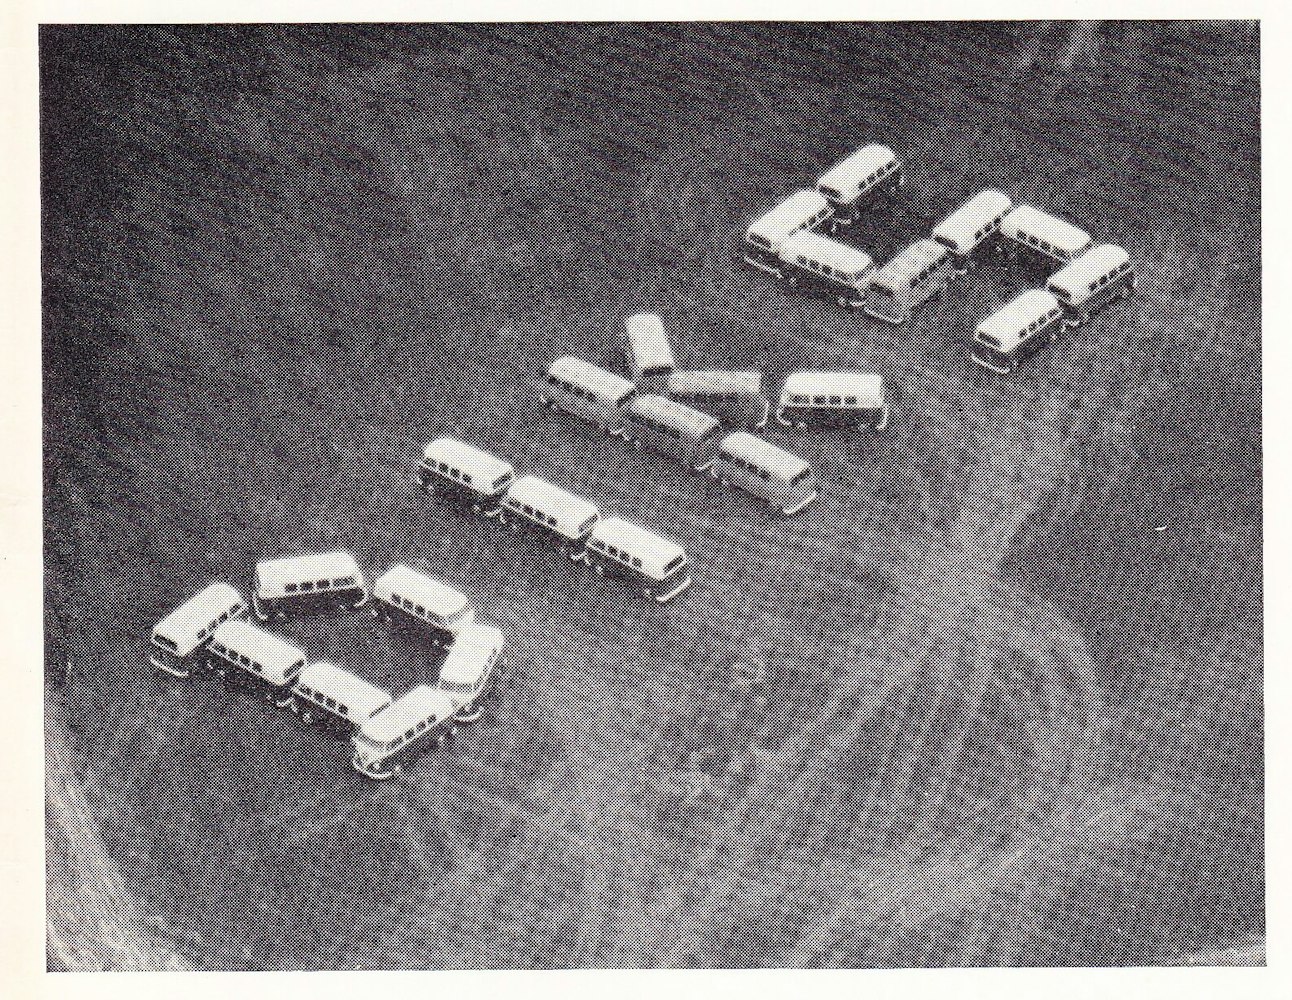 DIKS reclame vanuit de lucht bij vliegveld Schiphol in 1963.